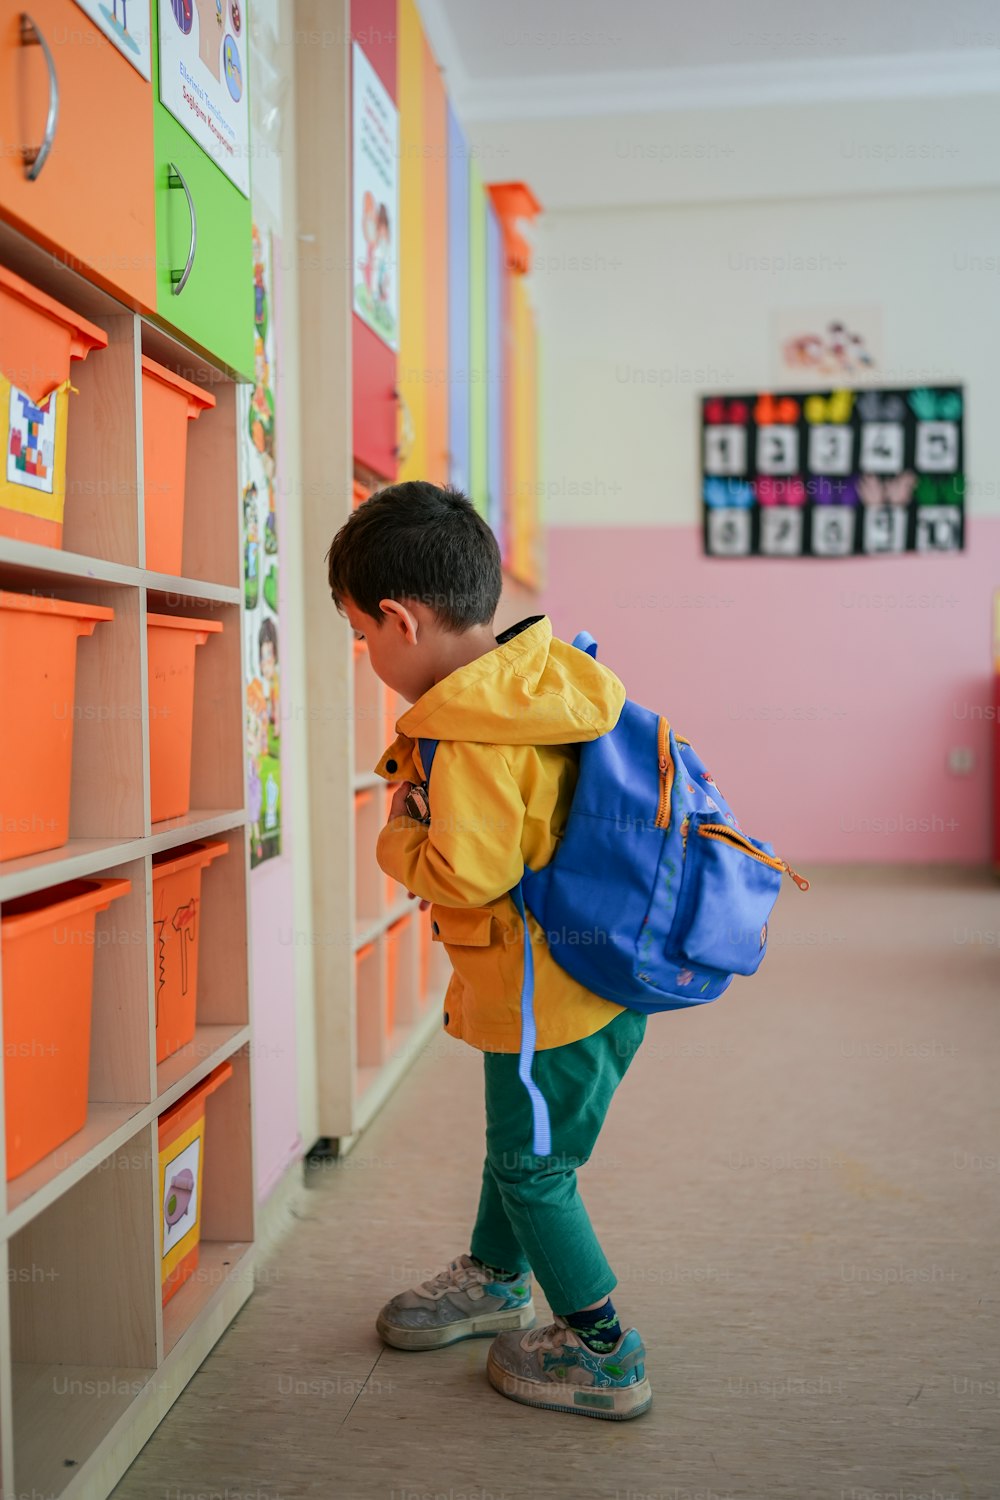 Ein kleiner Junge mit einem Rucksack, der auf ein Bücherregal schaut